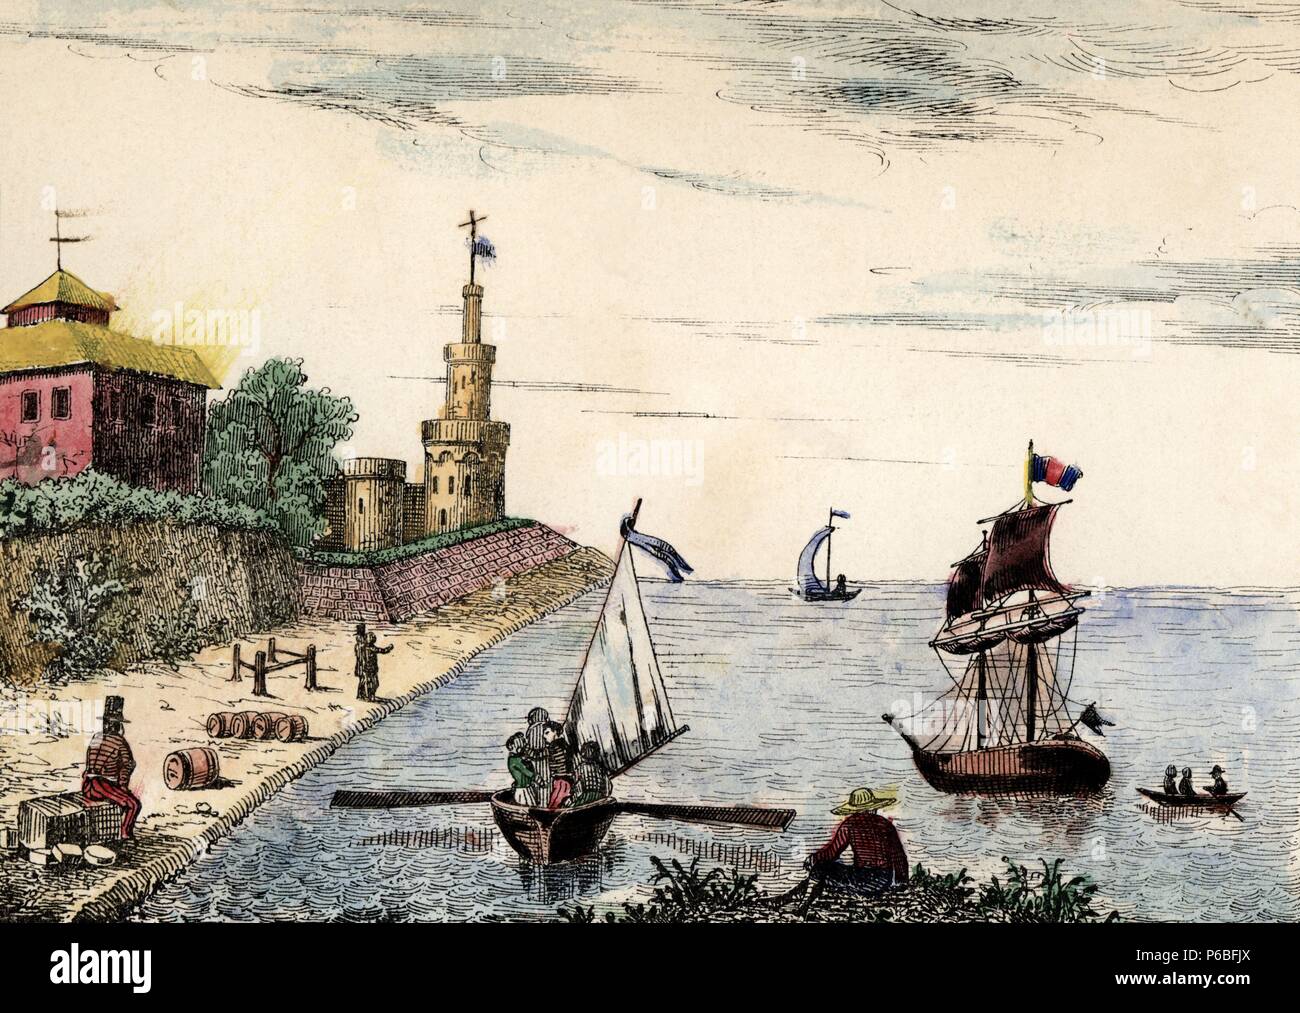 Holanda. Vista de Amberes. Grabado popular alemán coloreado a mano. Siglo XIX. Stock Photo